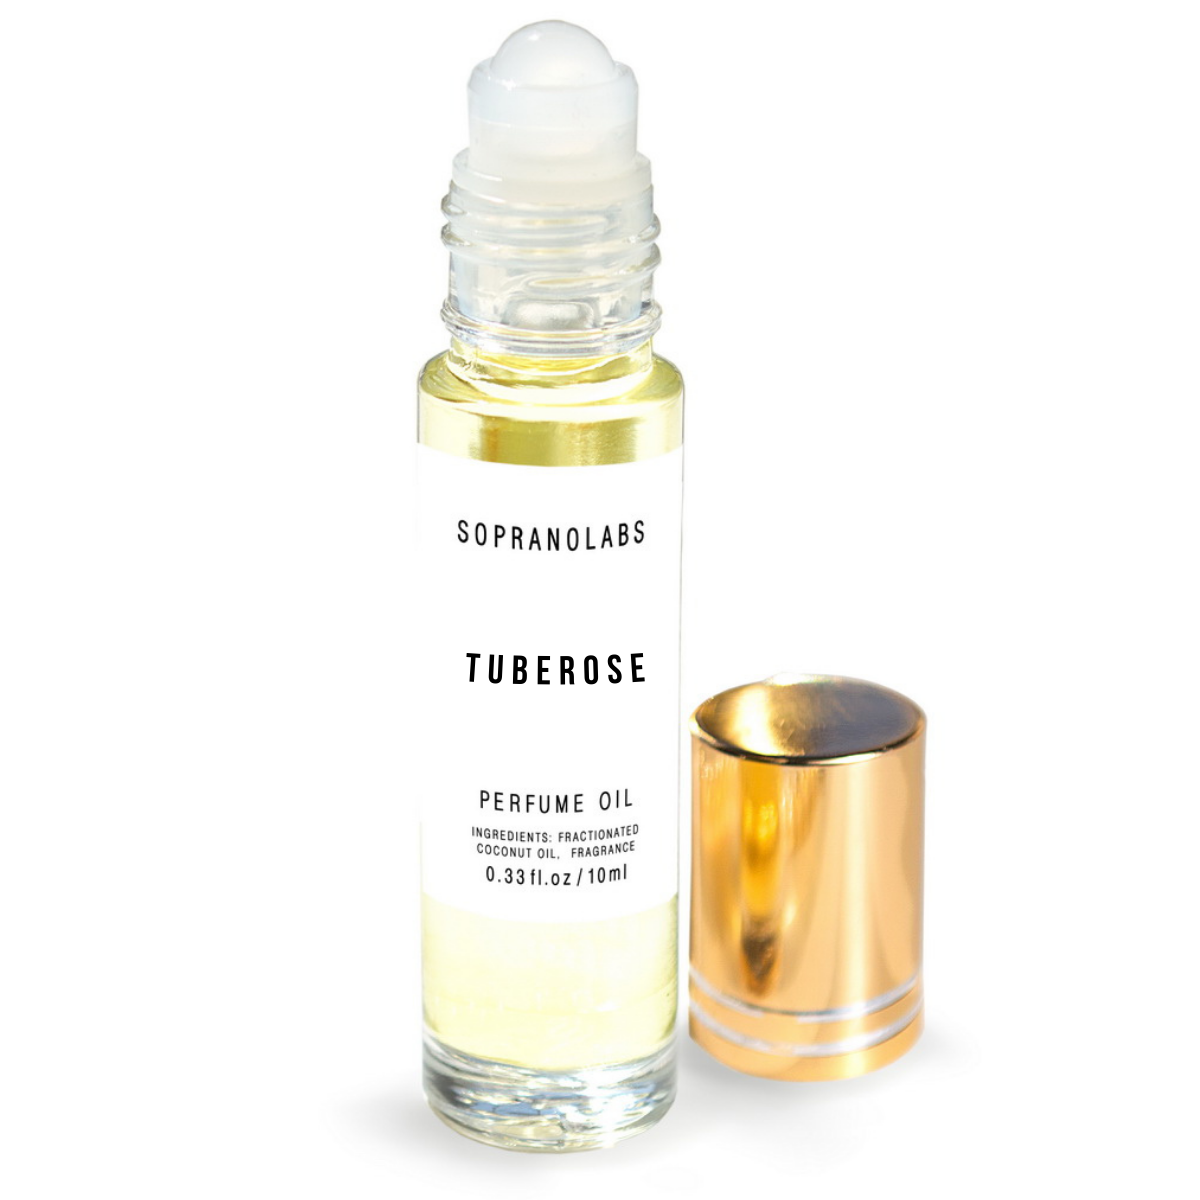 TUBEROSE Vegan Perfume Oil. Gift for her. Roll on 10 ml